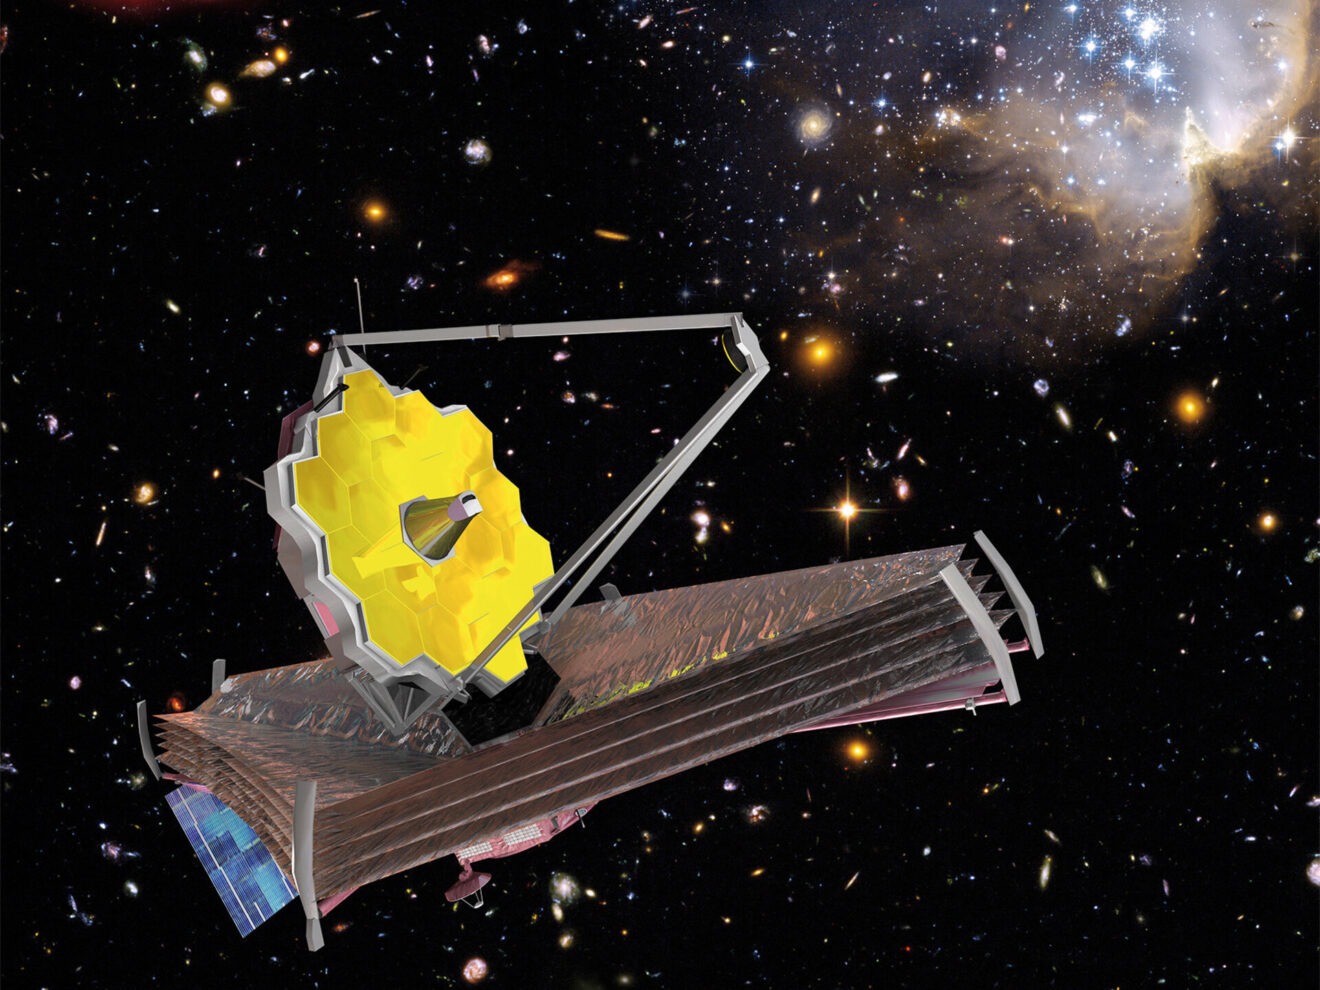 24 december online lezingen voorafgaand aan de lancering van de James Webb Ruimtetelescoop